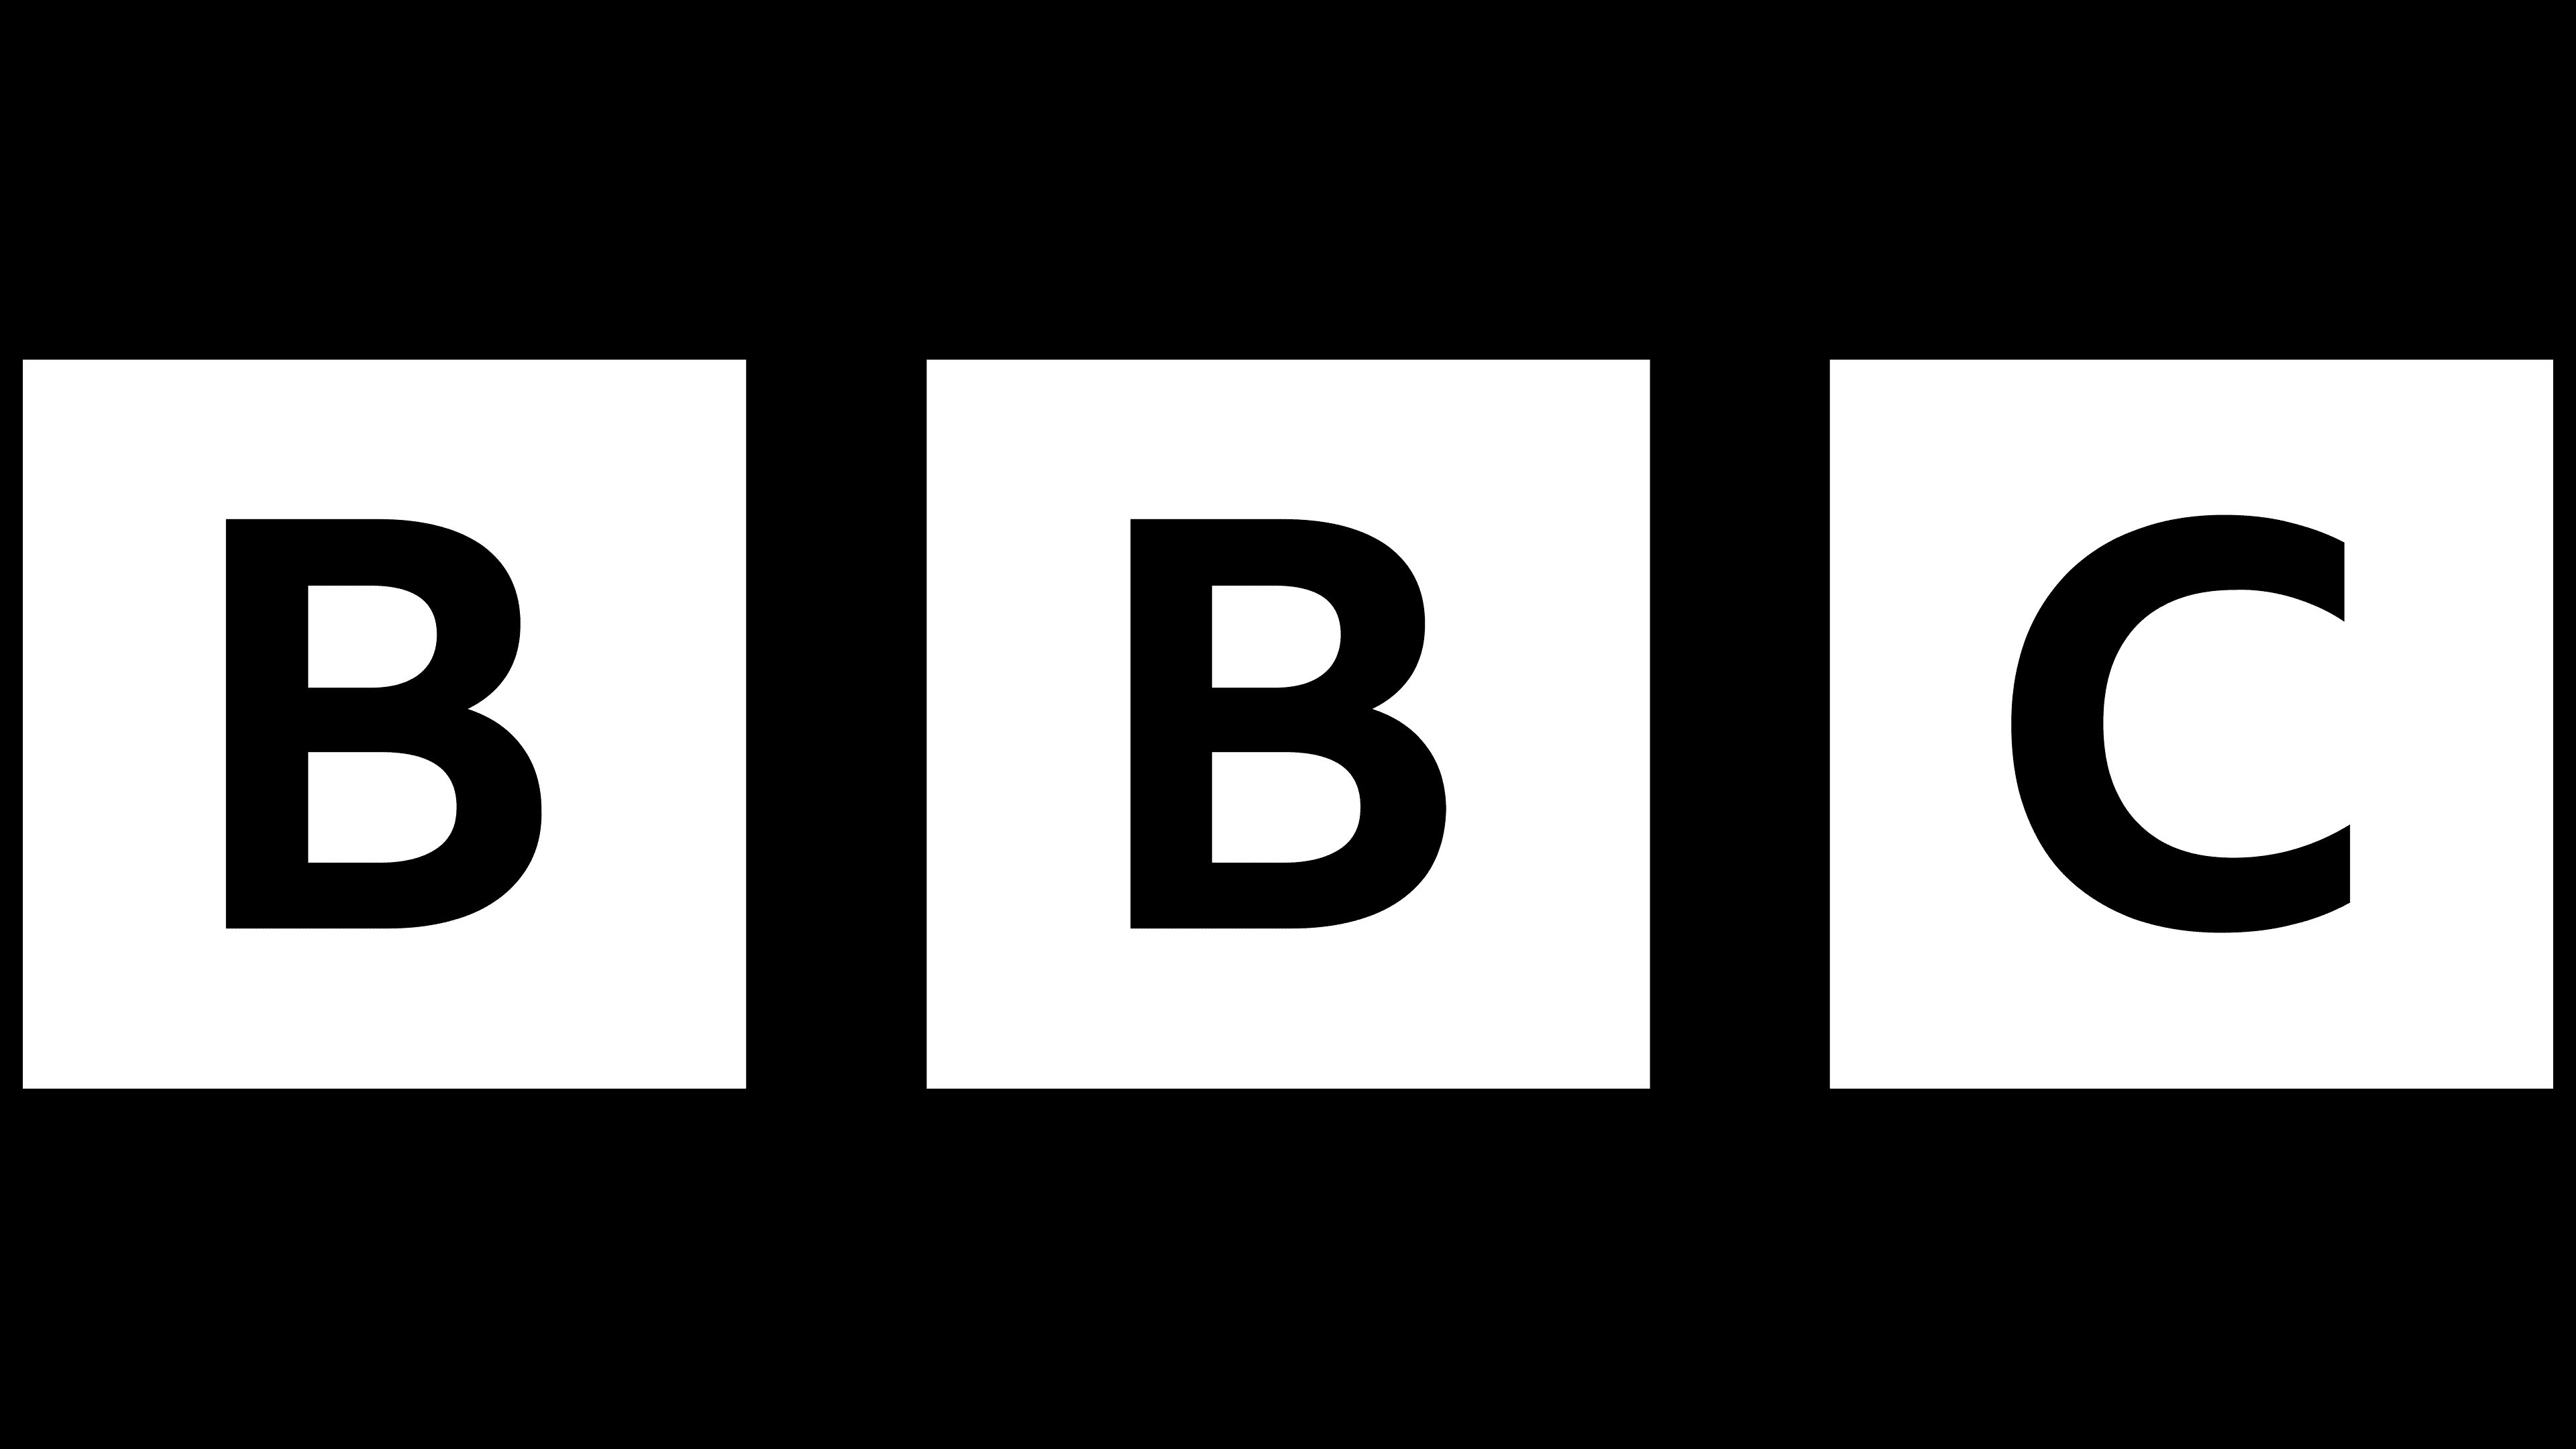 BBC defends its new logo